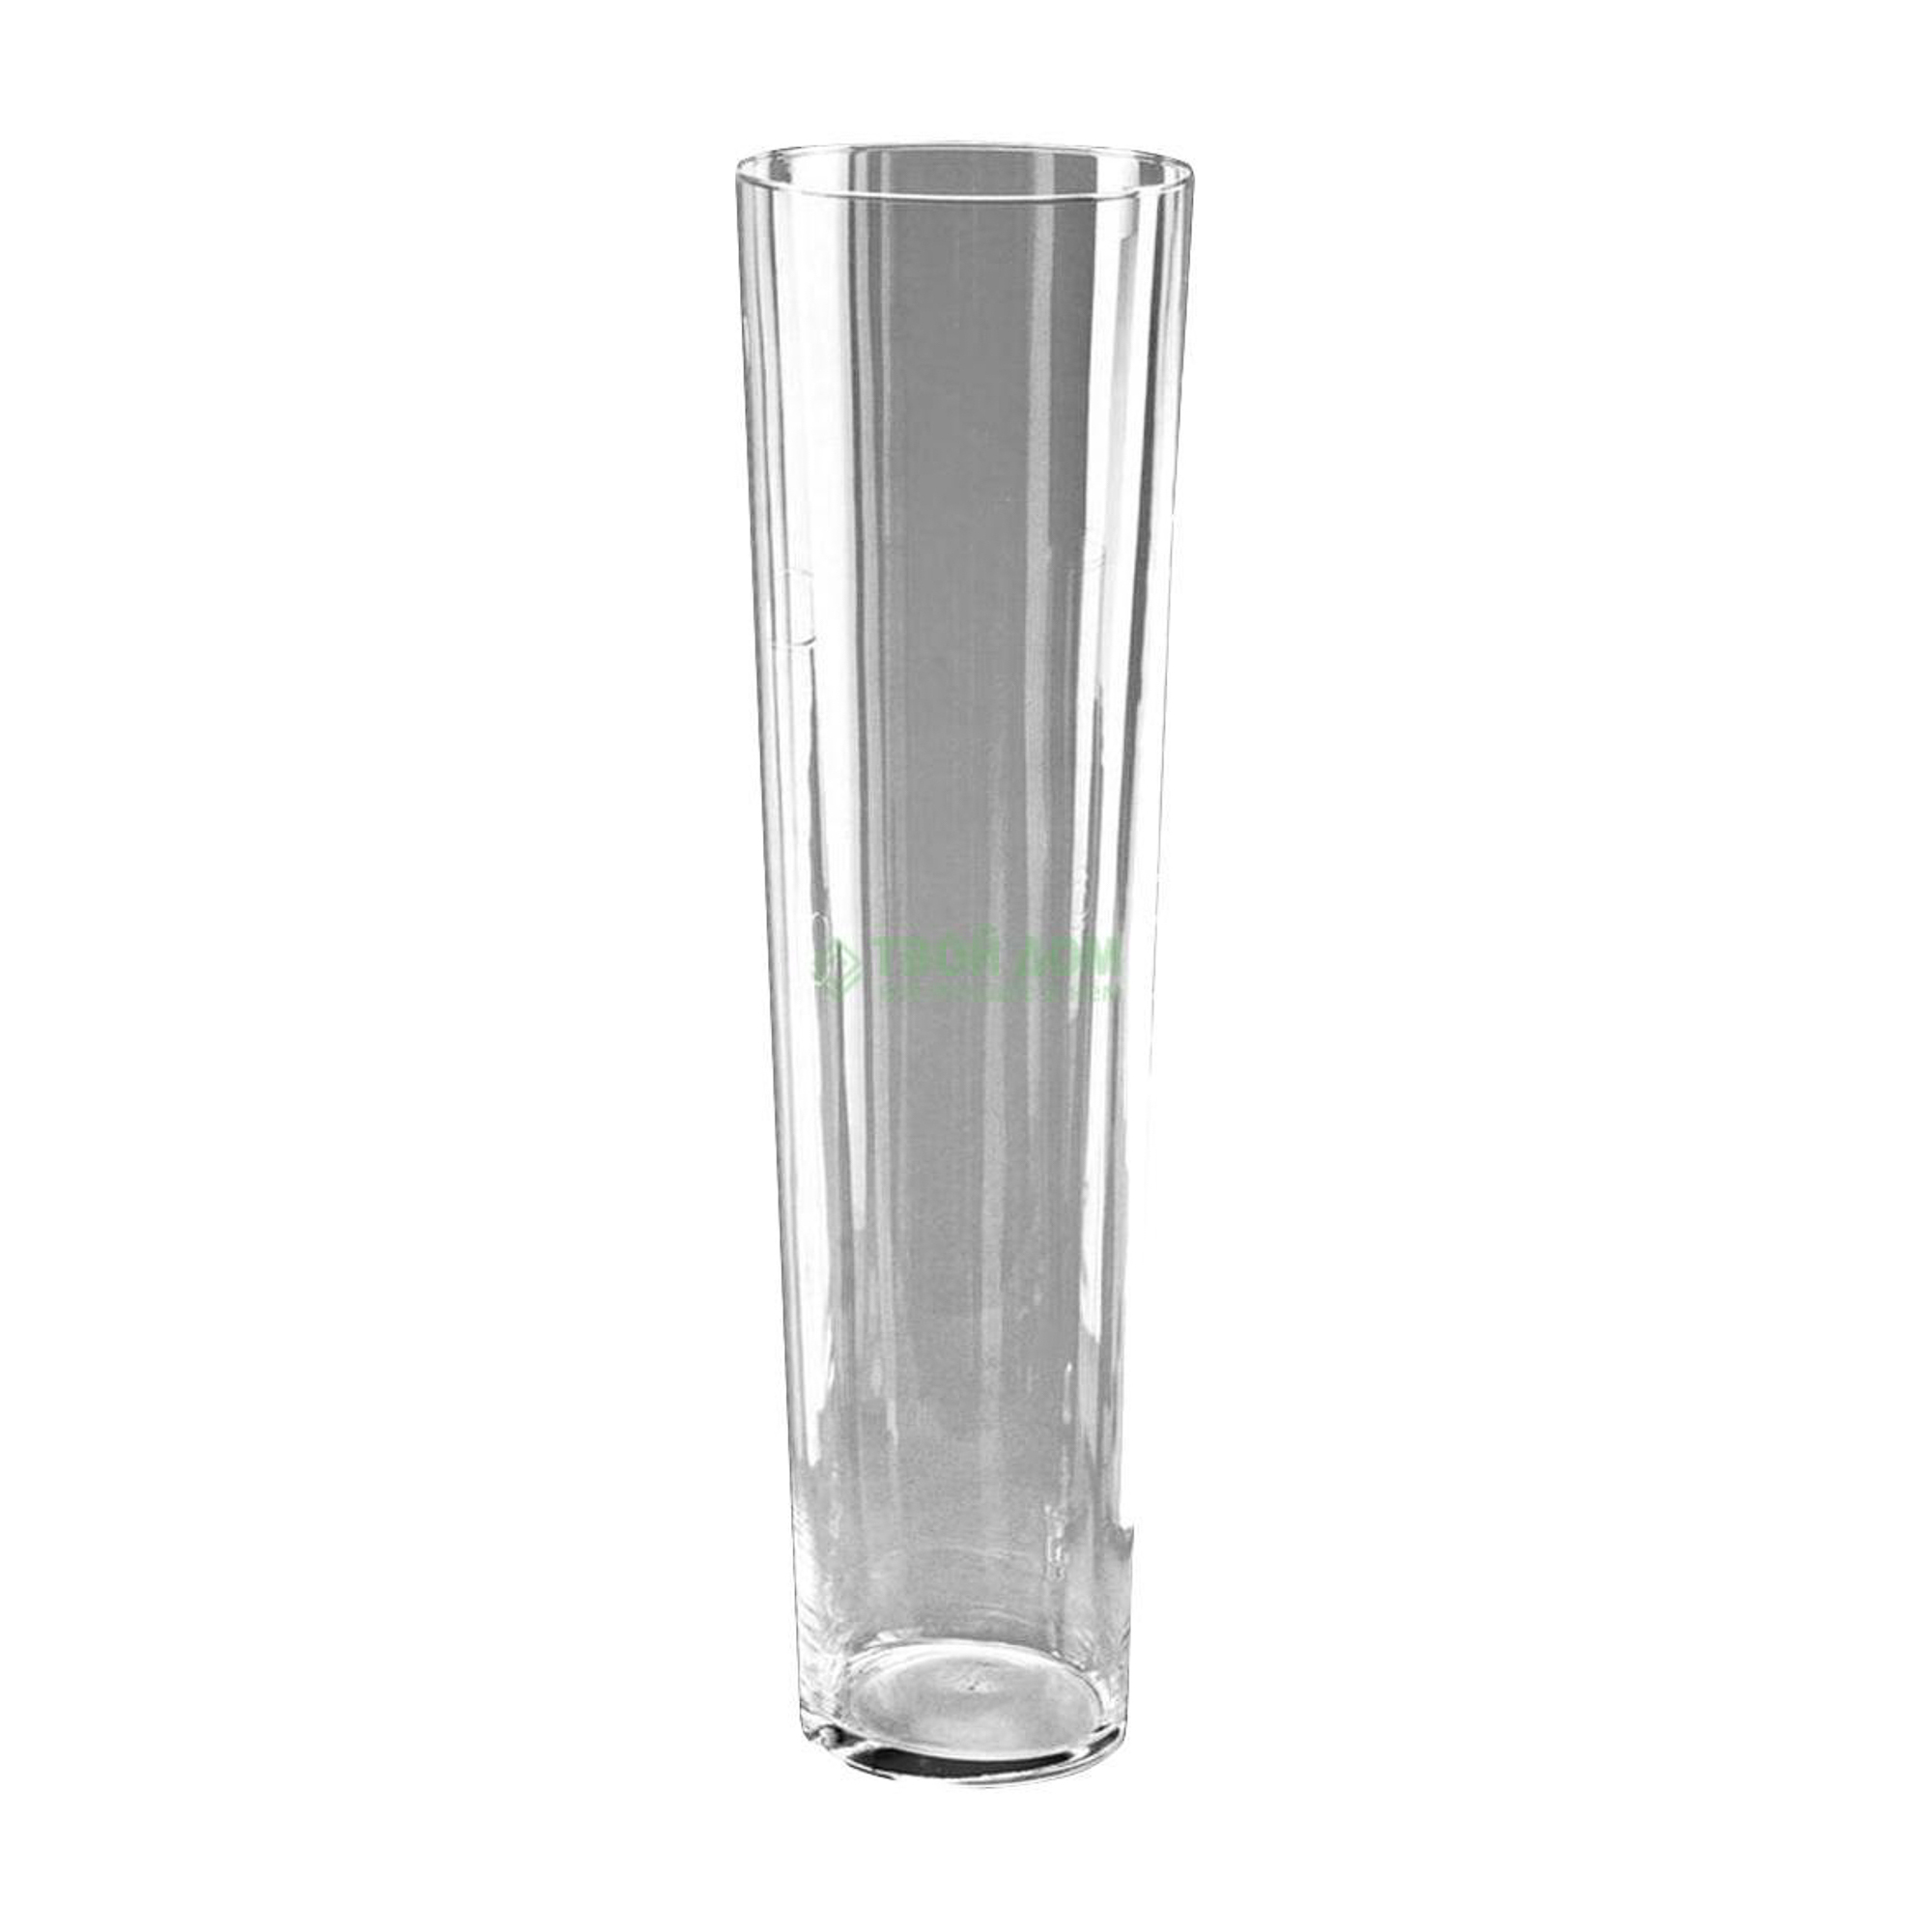 Ваза Hackbijl glass conical